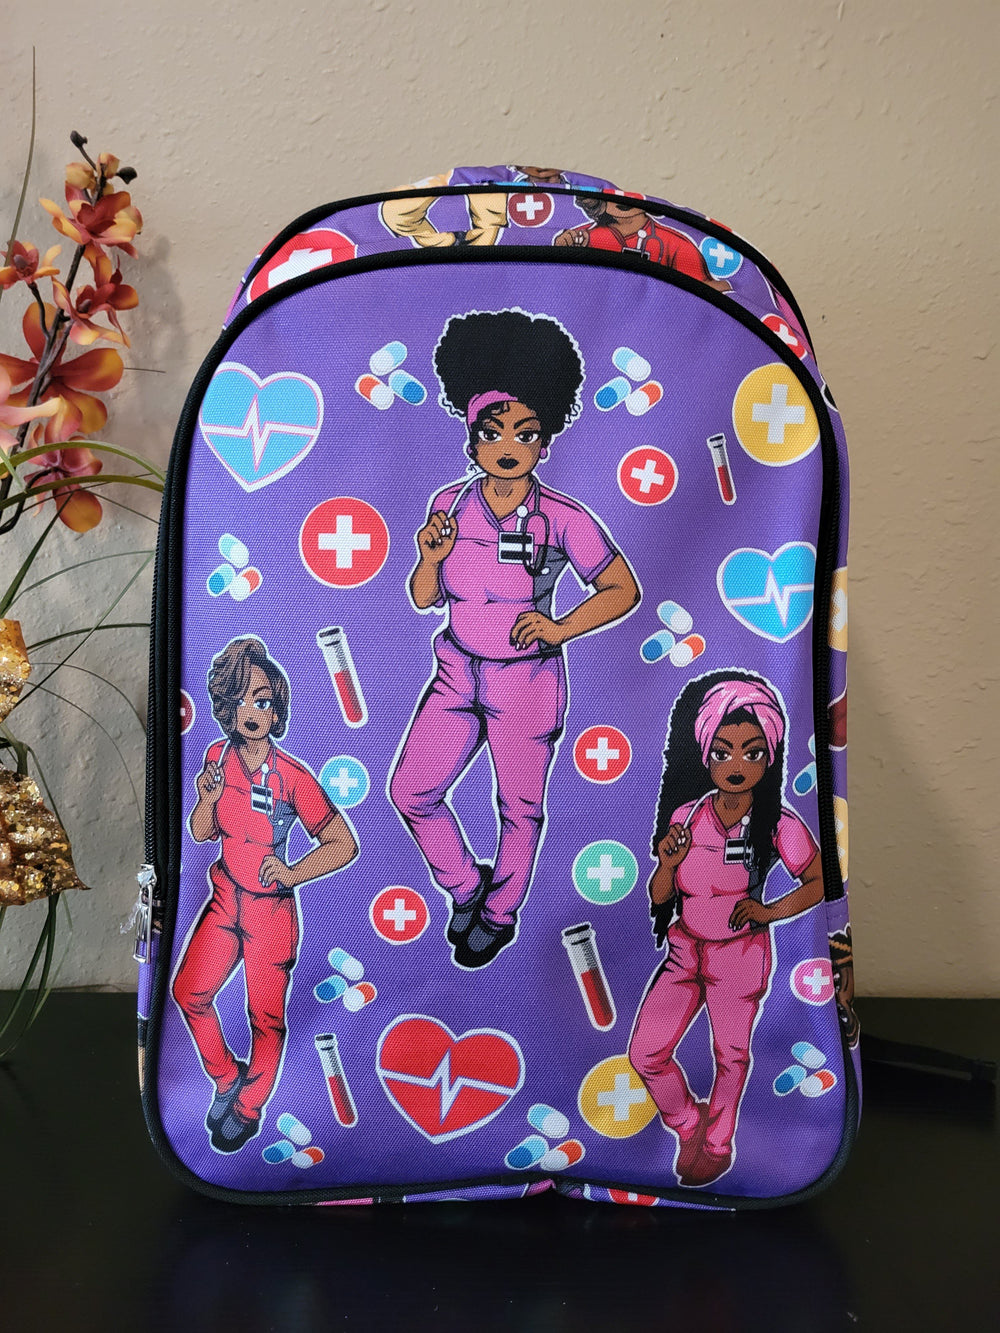 Designed Work Backpack for Nurse